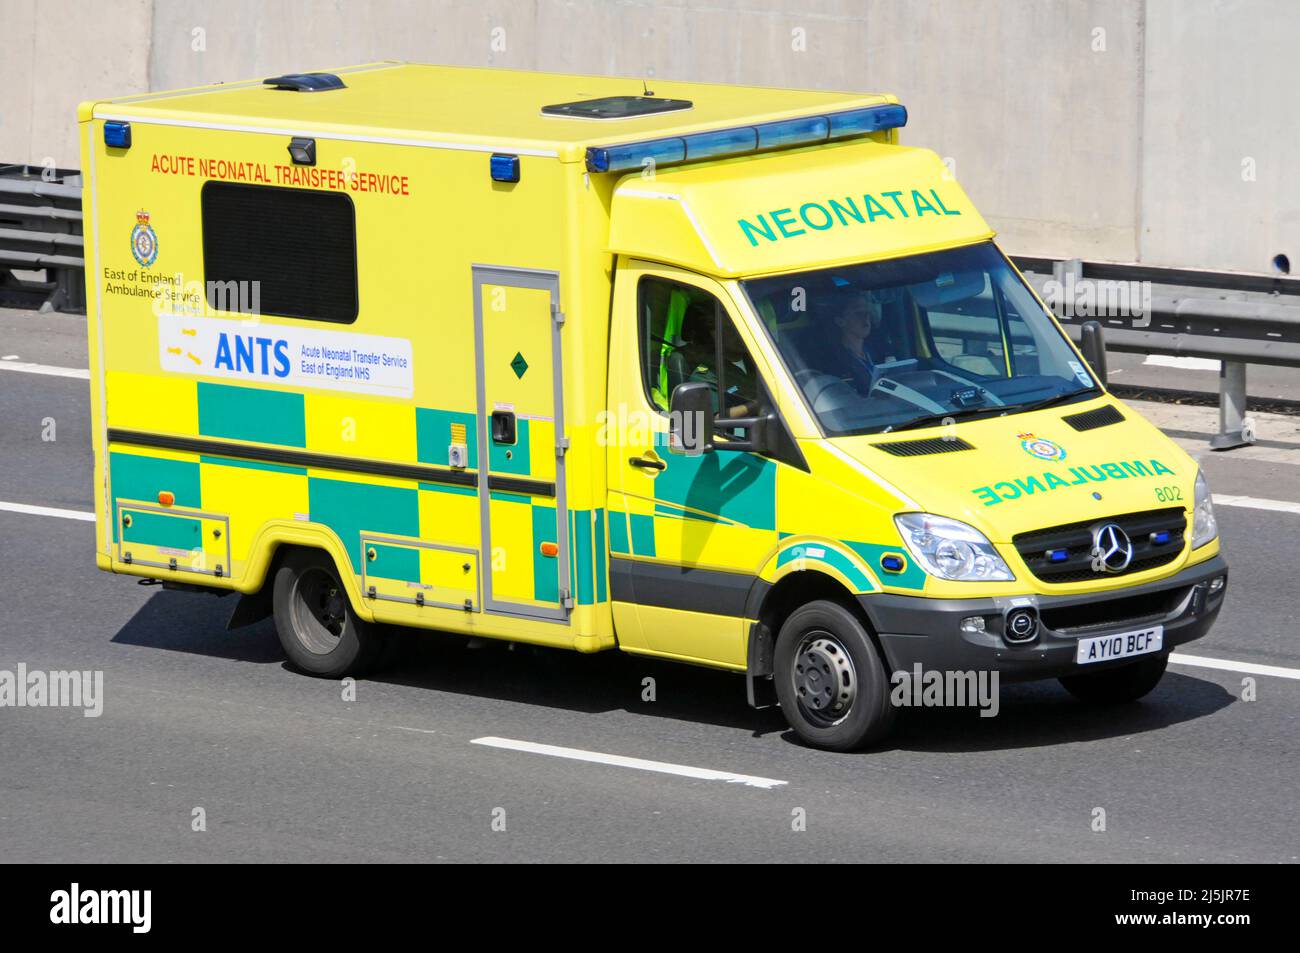 Vista lateral y frontal Mercedes National Health Service NHS Trust Este de Inglaterra Ambulancia Un equipo del Servicio de Transferencia Neonatal Aguda que conduce por la autopista del Reino Unido Foto de stock